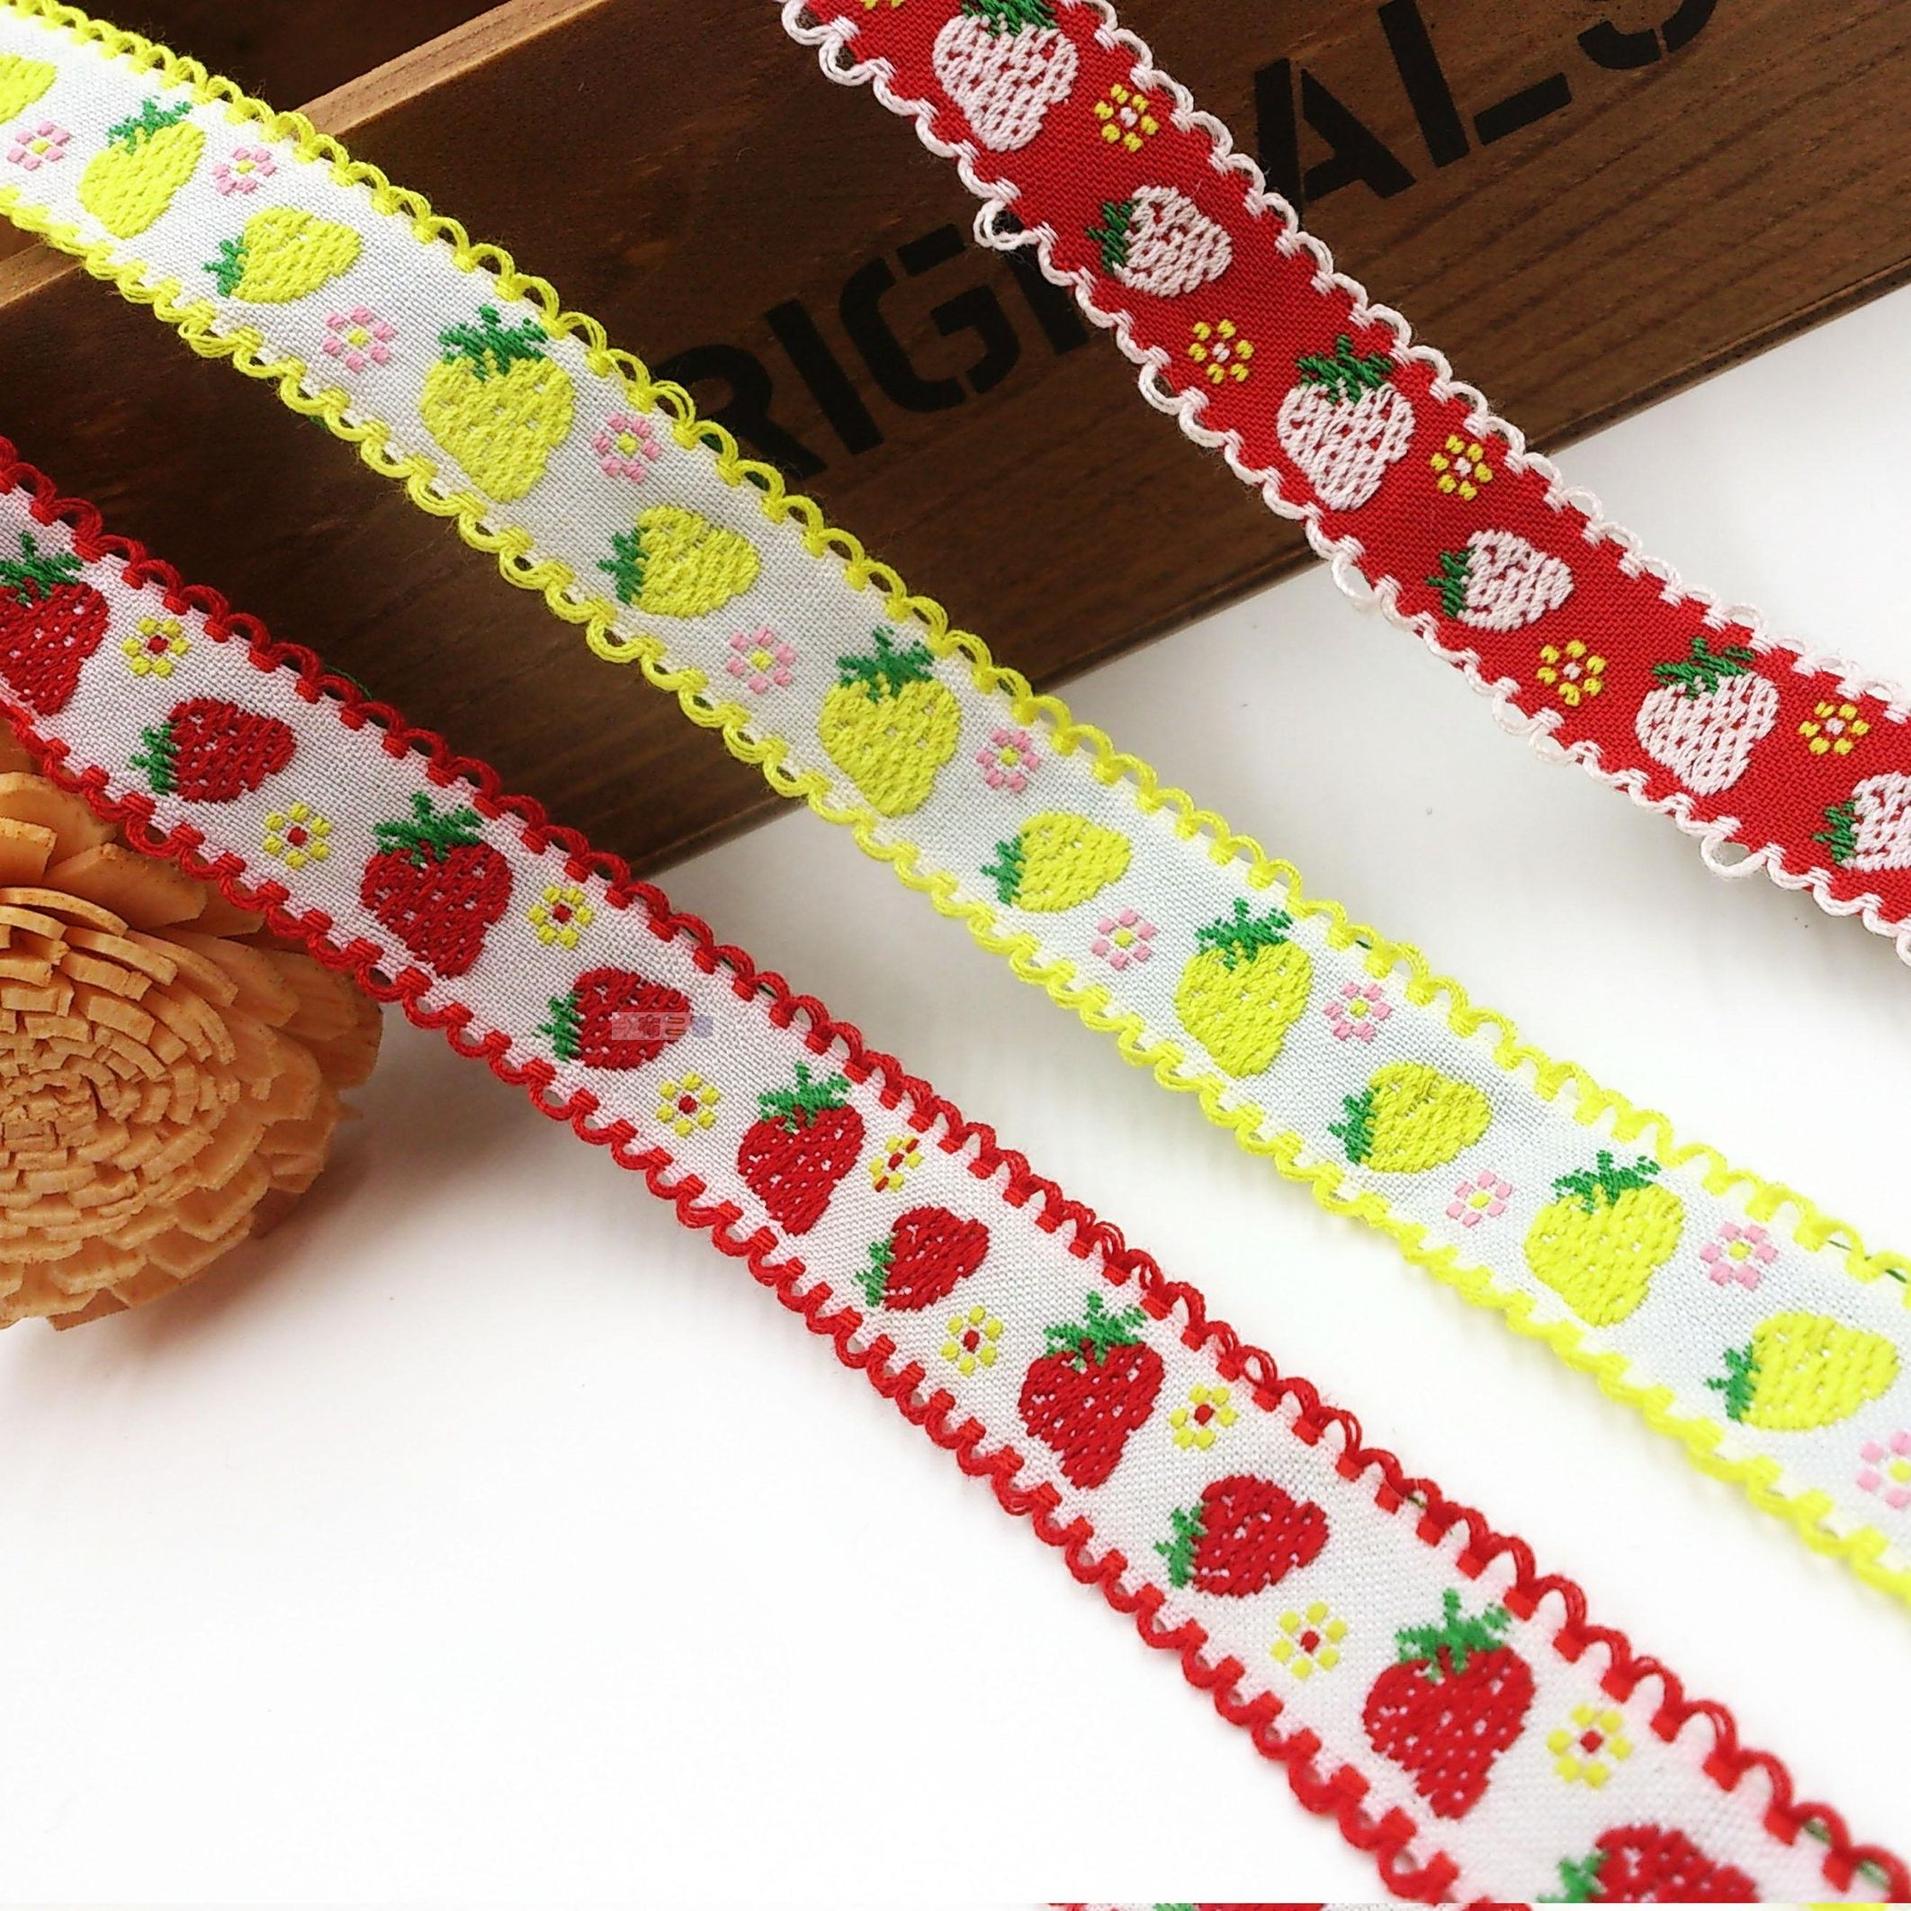 民族织带提花彩带装饰服装辅料配件草莓图案装饰带条布1.5cm宽